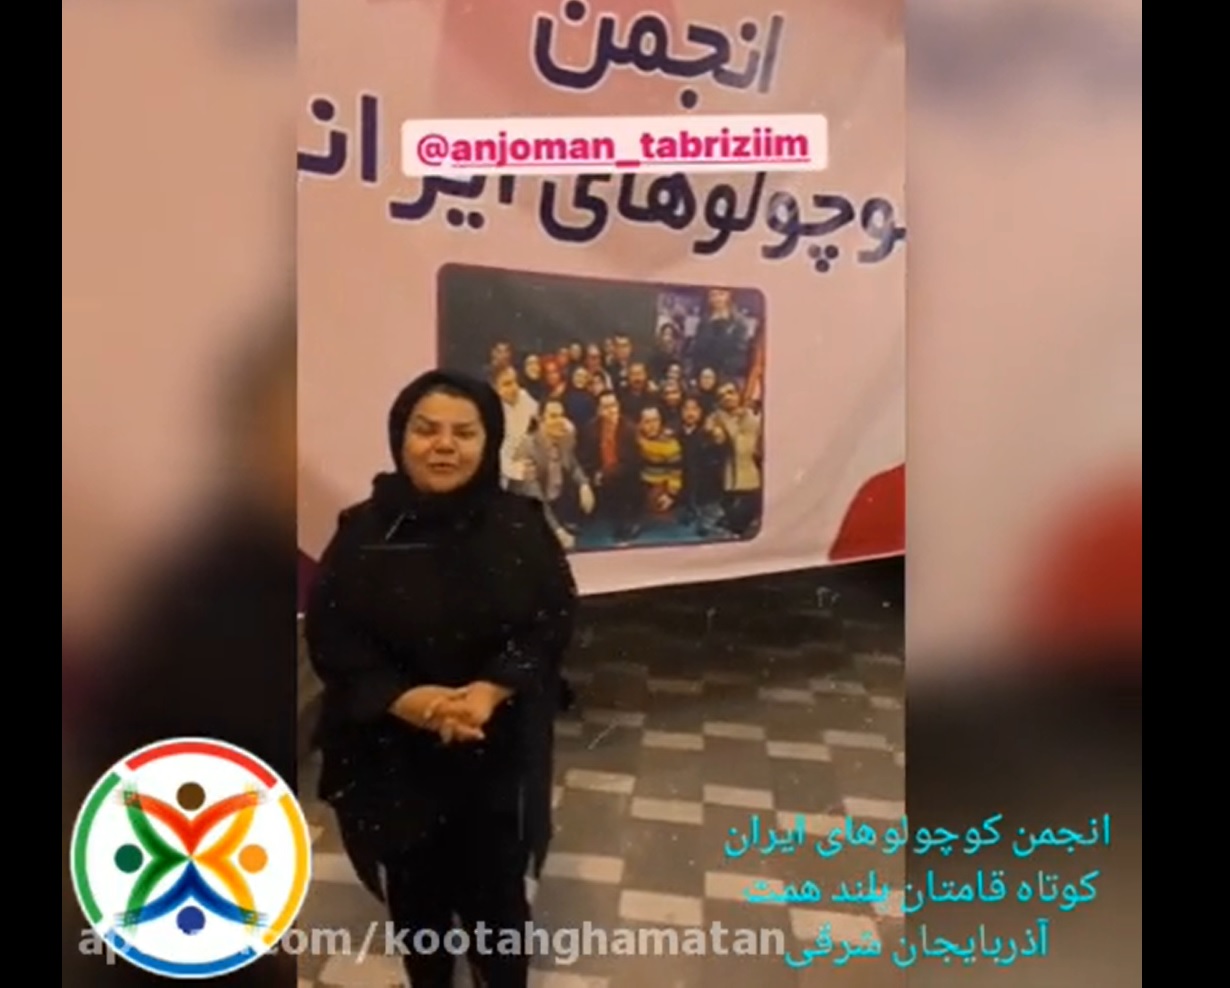 تامین محل فعالیت های انجمن کوتاه قامتان تبریز